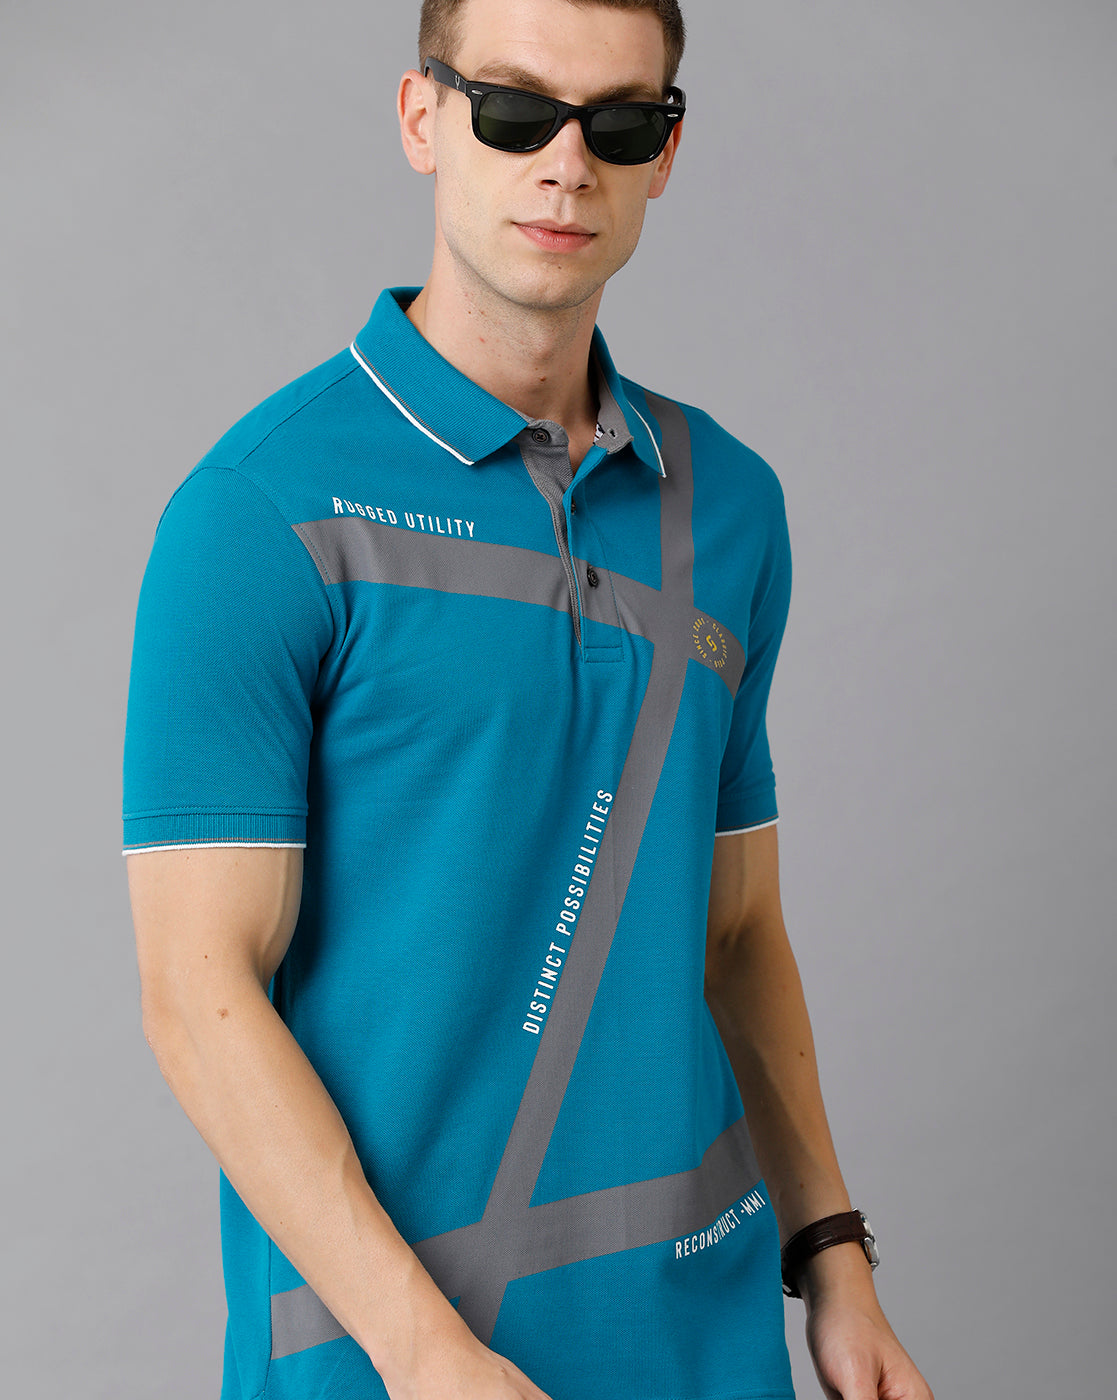 Classic Polo Men's Cotton Printed Slim Fit Blue T-Shirt | Prm - 701 A